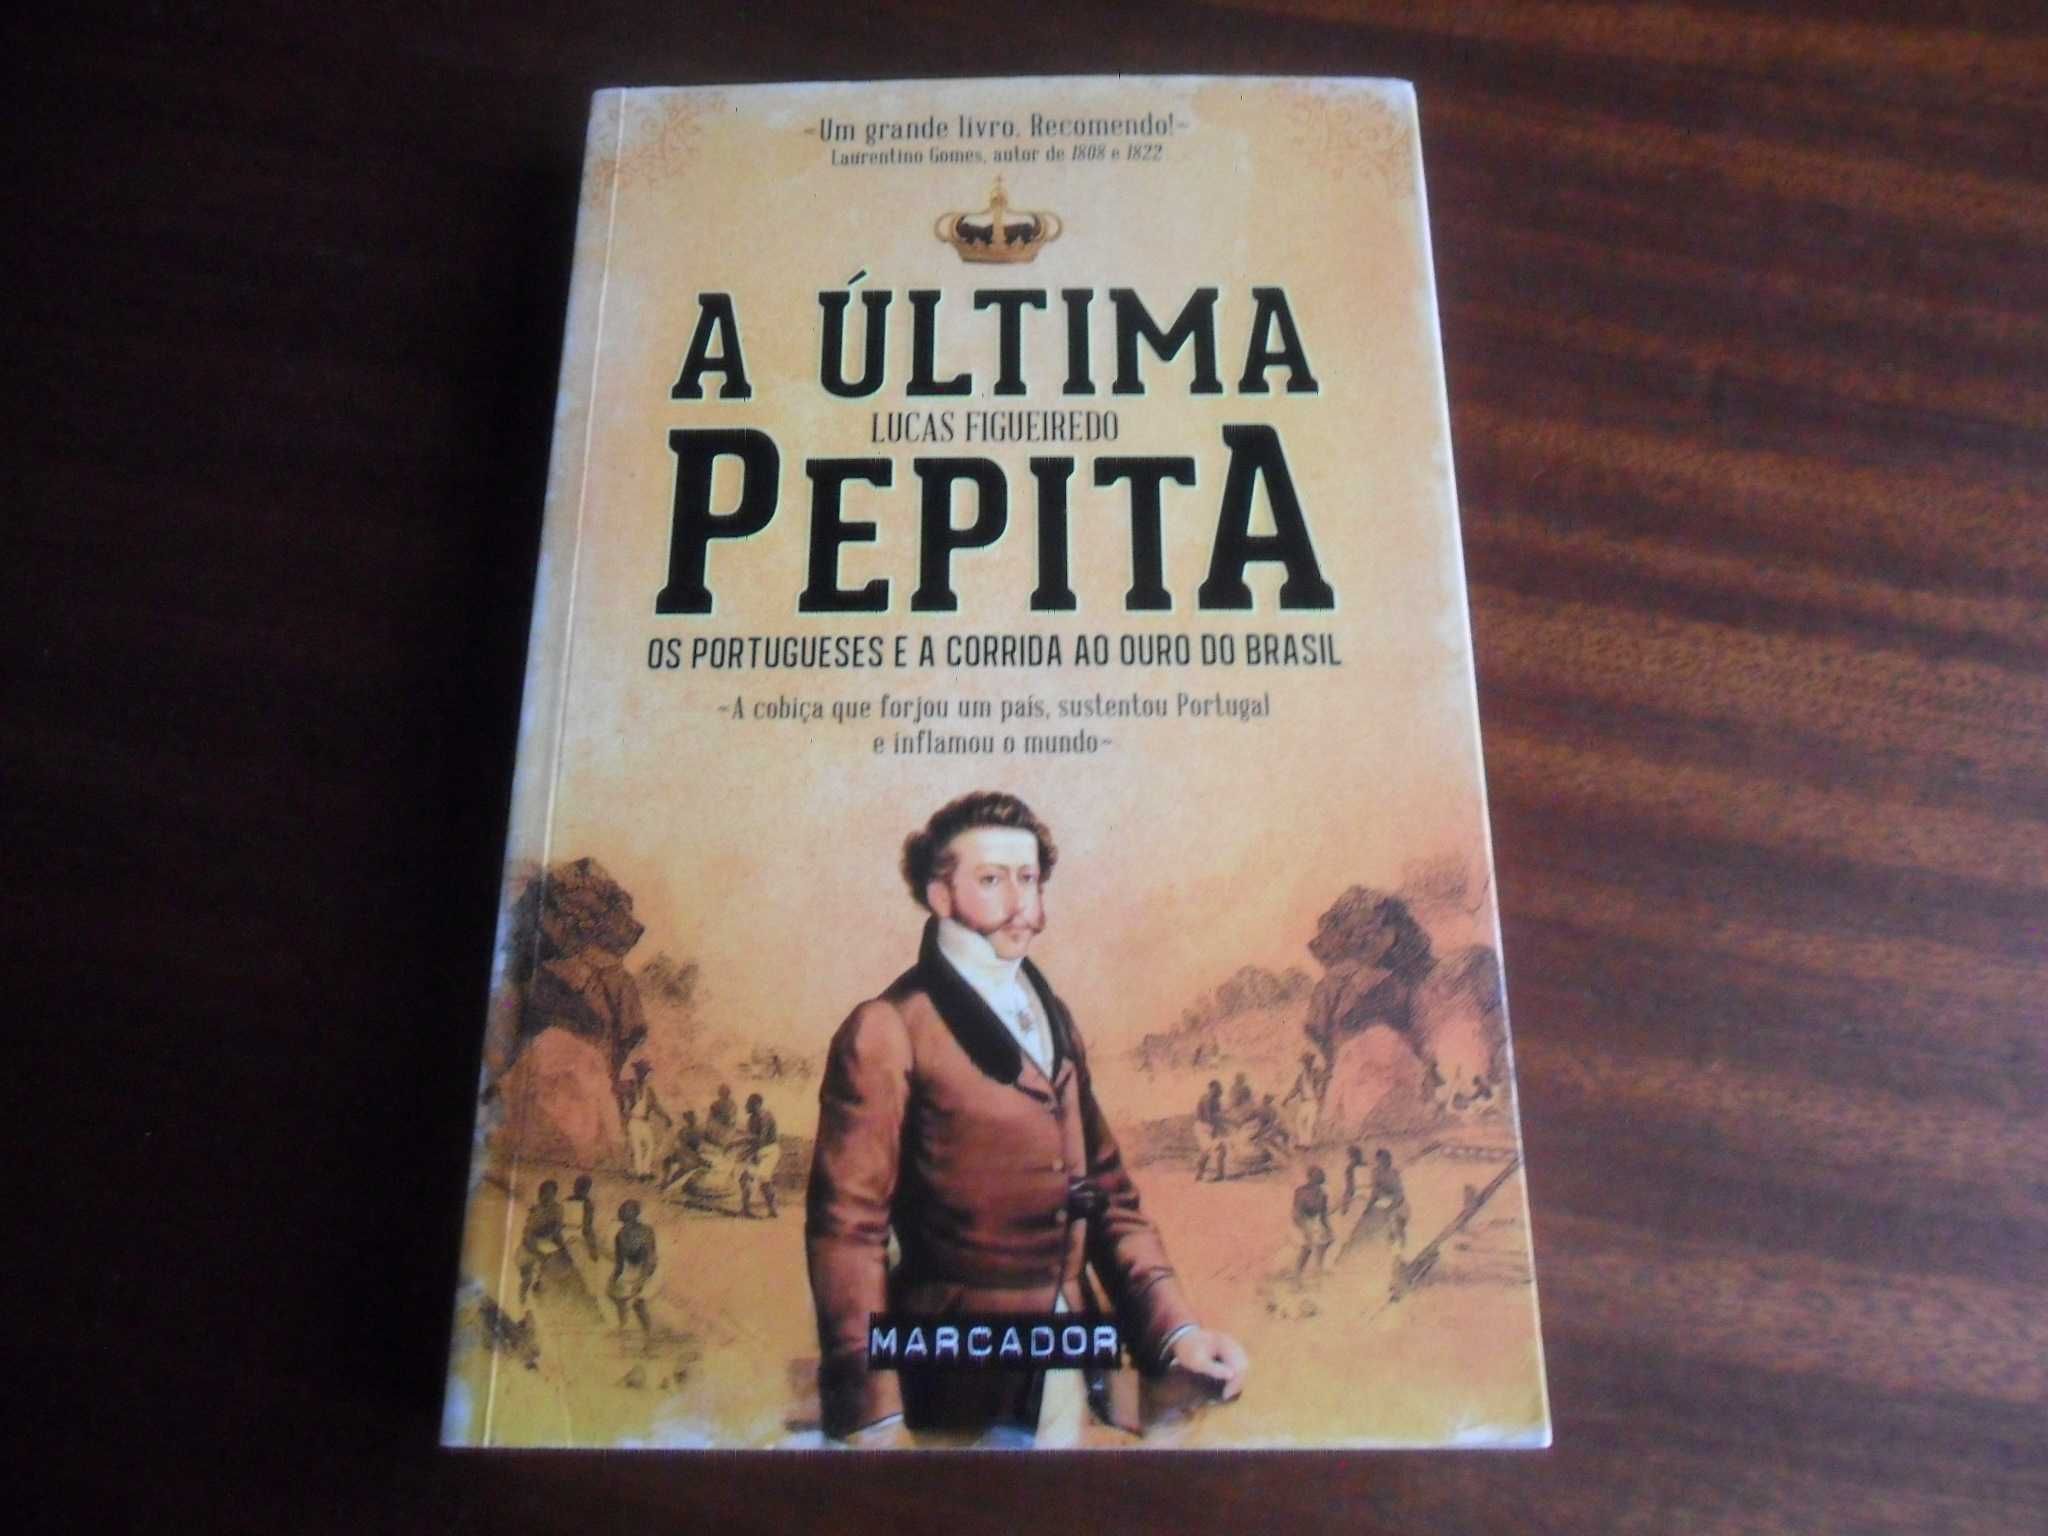 "A Última Pepita" de Lucas Figueiredo - 1ª Edição de 2012